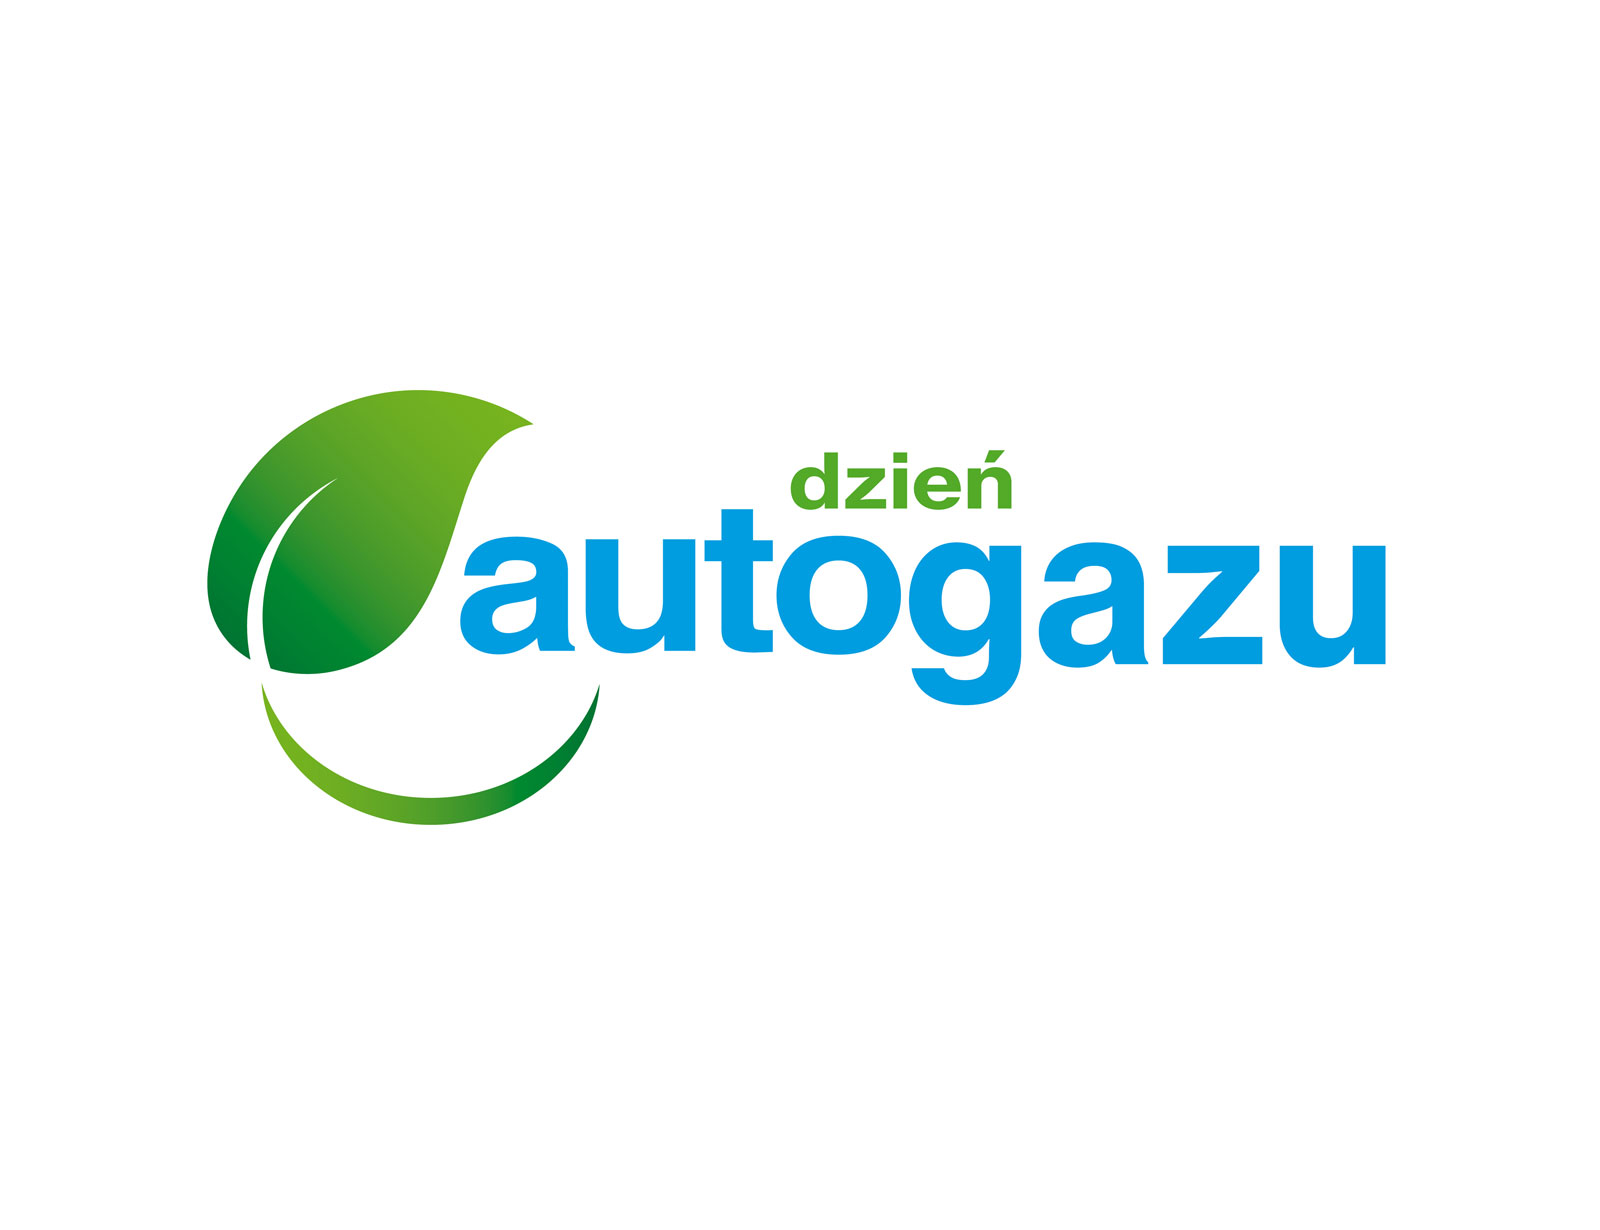 Dzień Autogazu - Autogas Day 2021